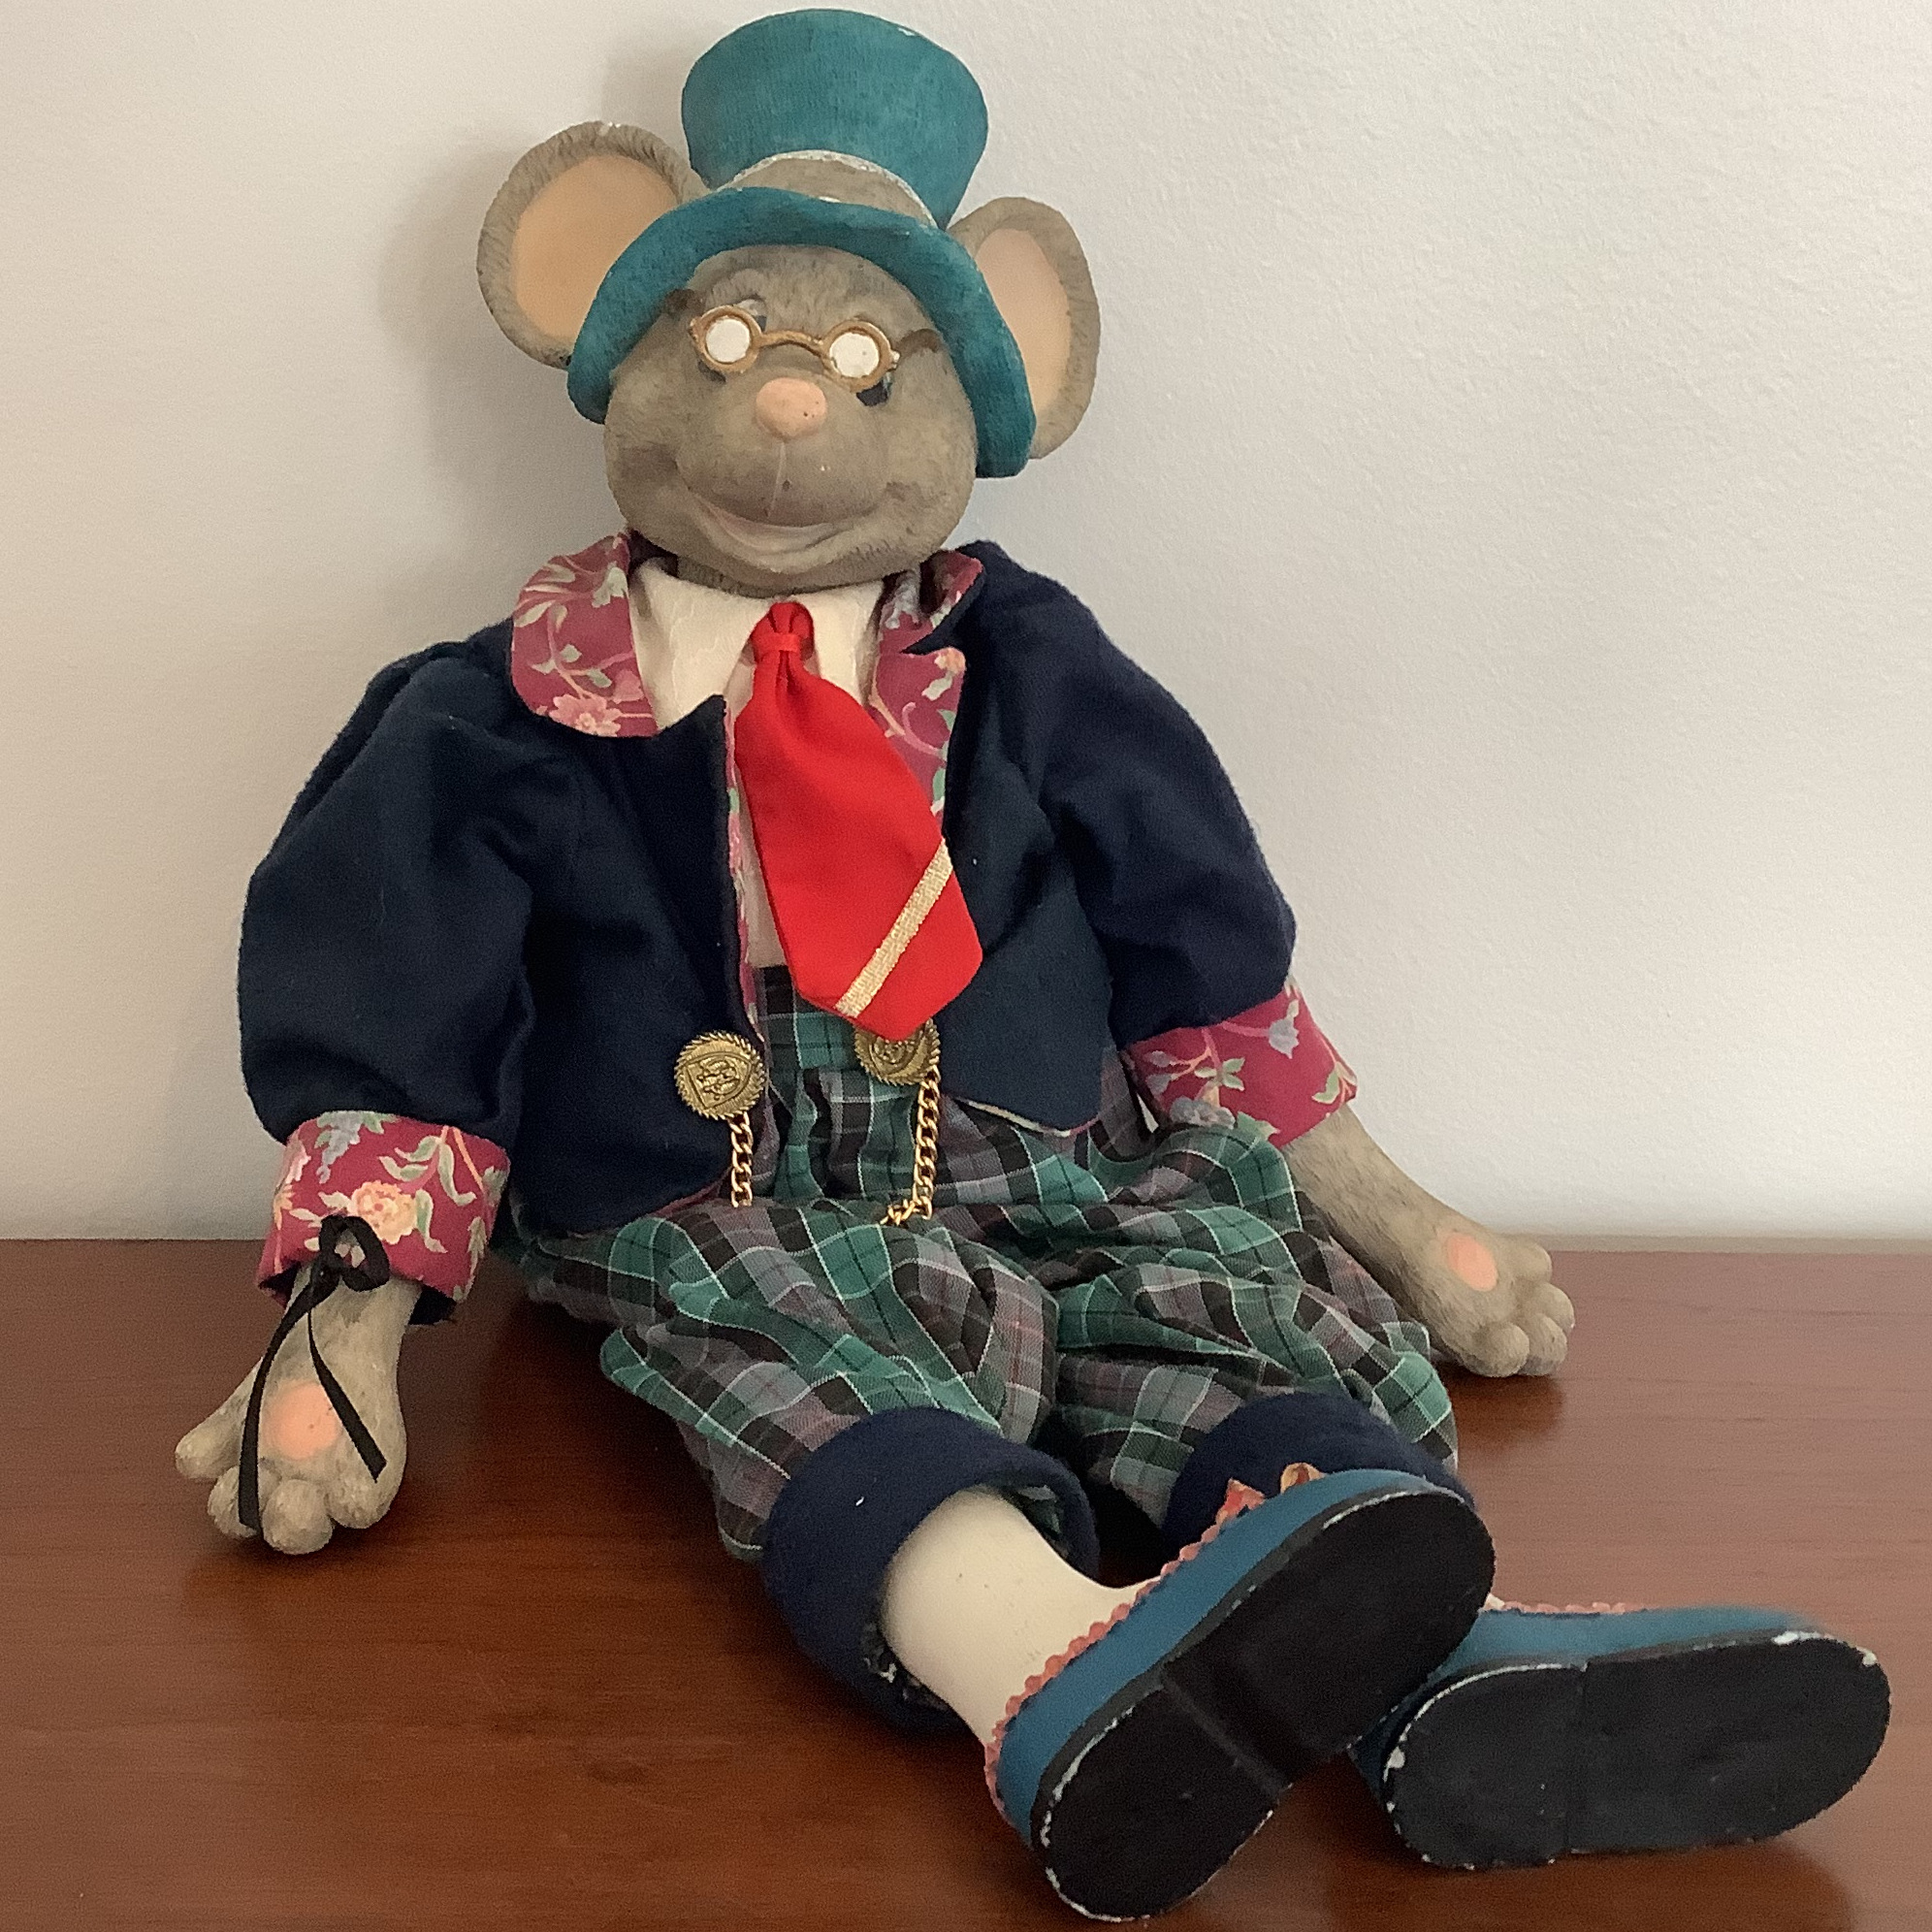 Mouse doll wearing nostalgic winter clothing